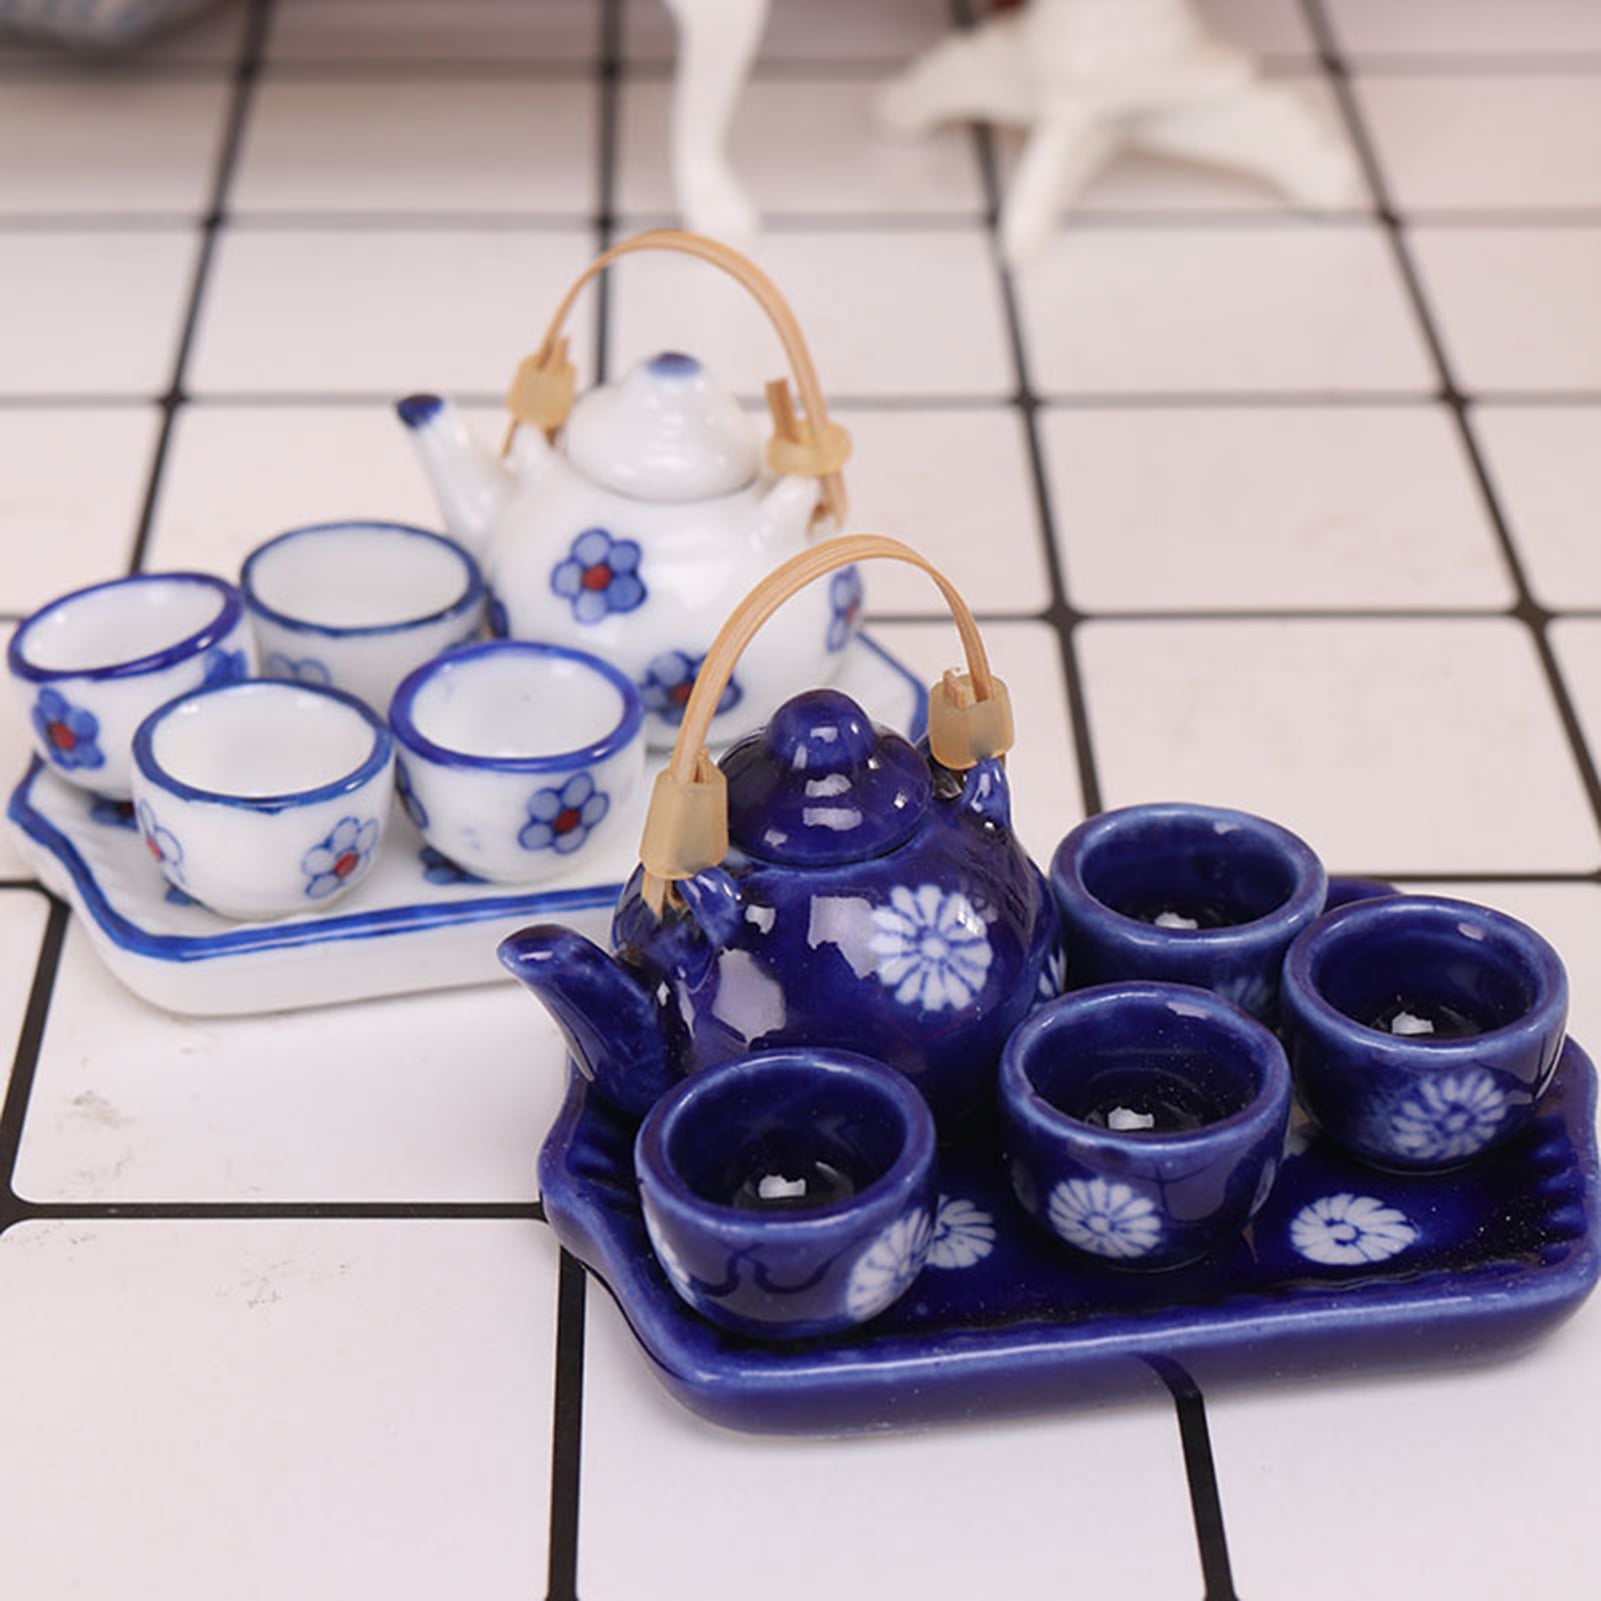 Artvigor 1-Piece Porcelain Teapot Brown Tea Pot Teacup and Saucer Set  ART-CC011 - The Home Depot